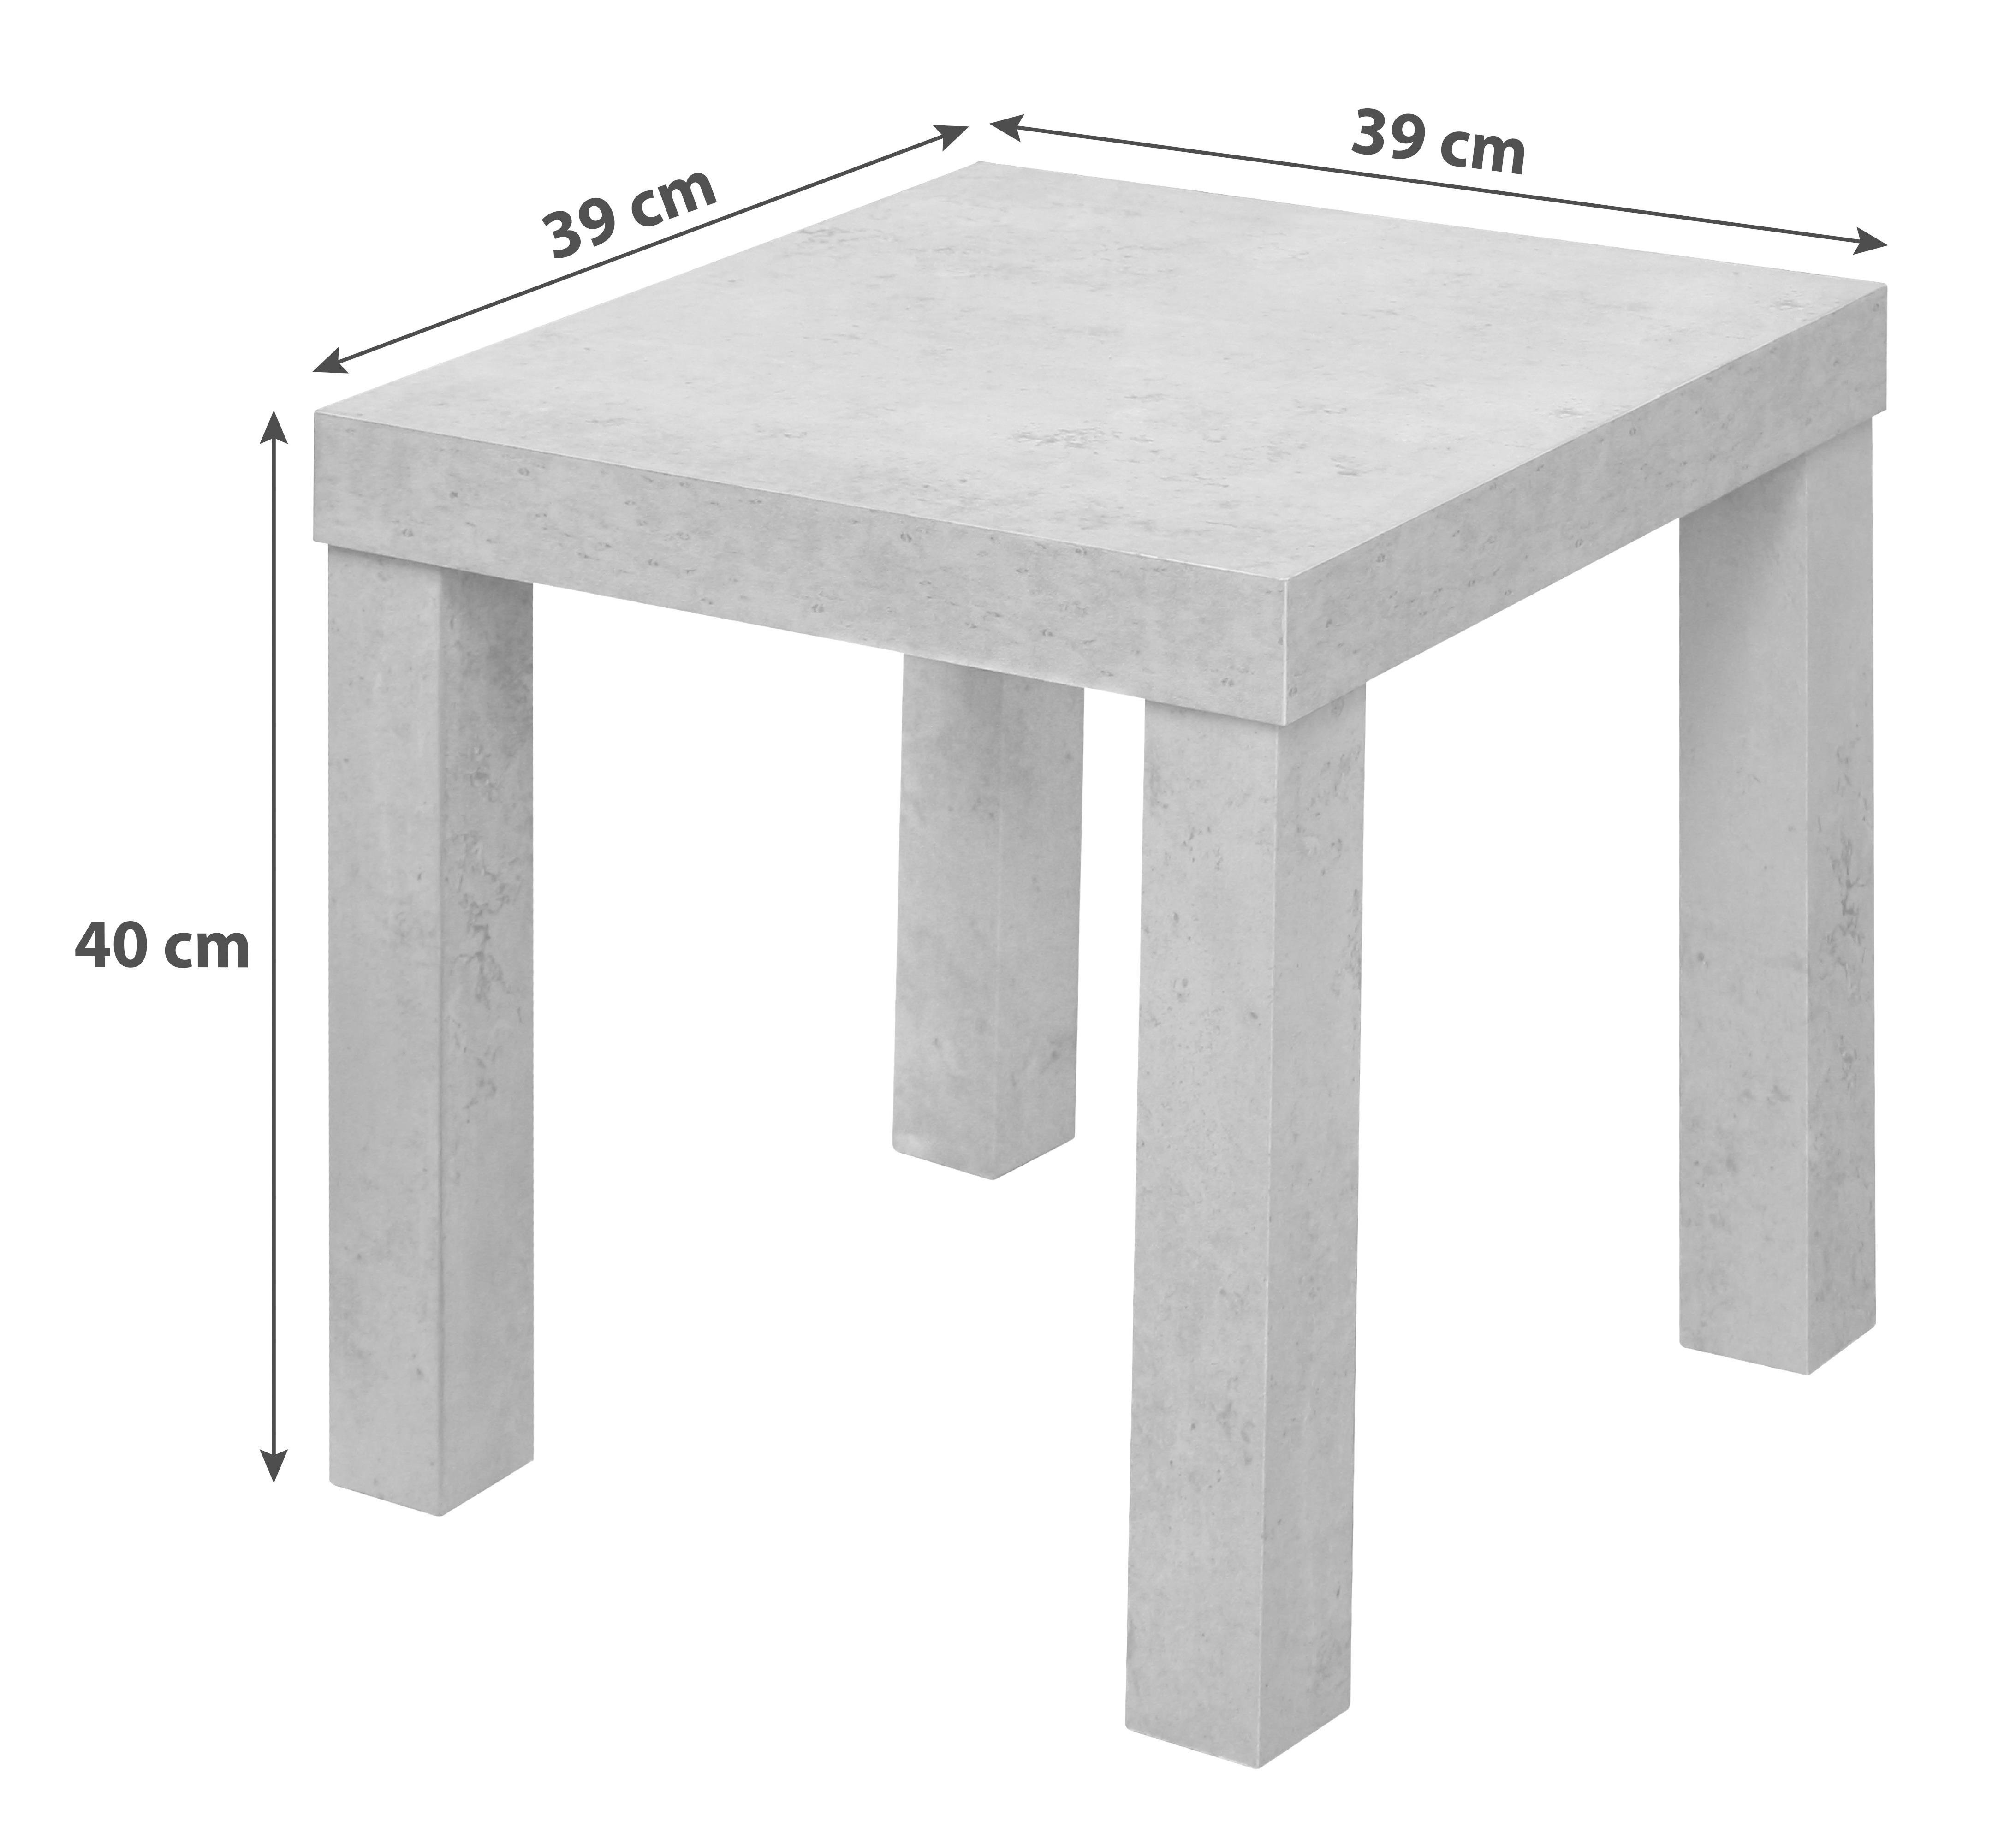 Odkládací Stolek Normen *cenový Trhák* - šedá, Moderní, kompozitní dřevo (39/40/39cm) - Based